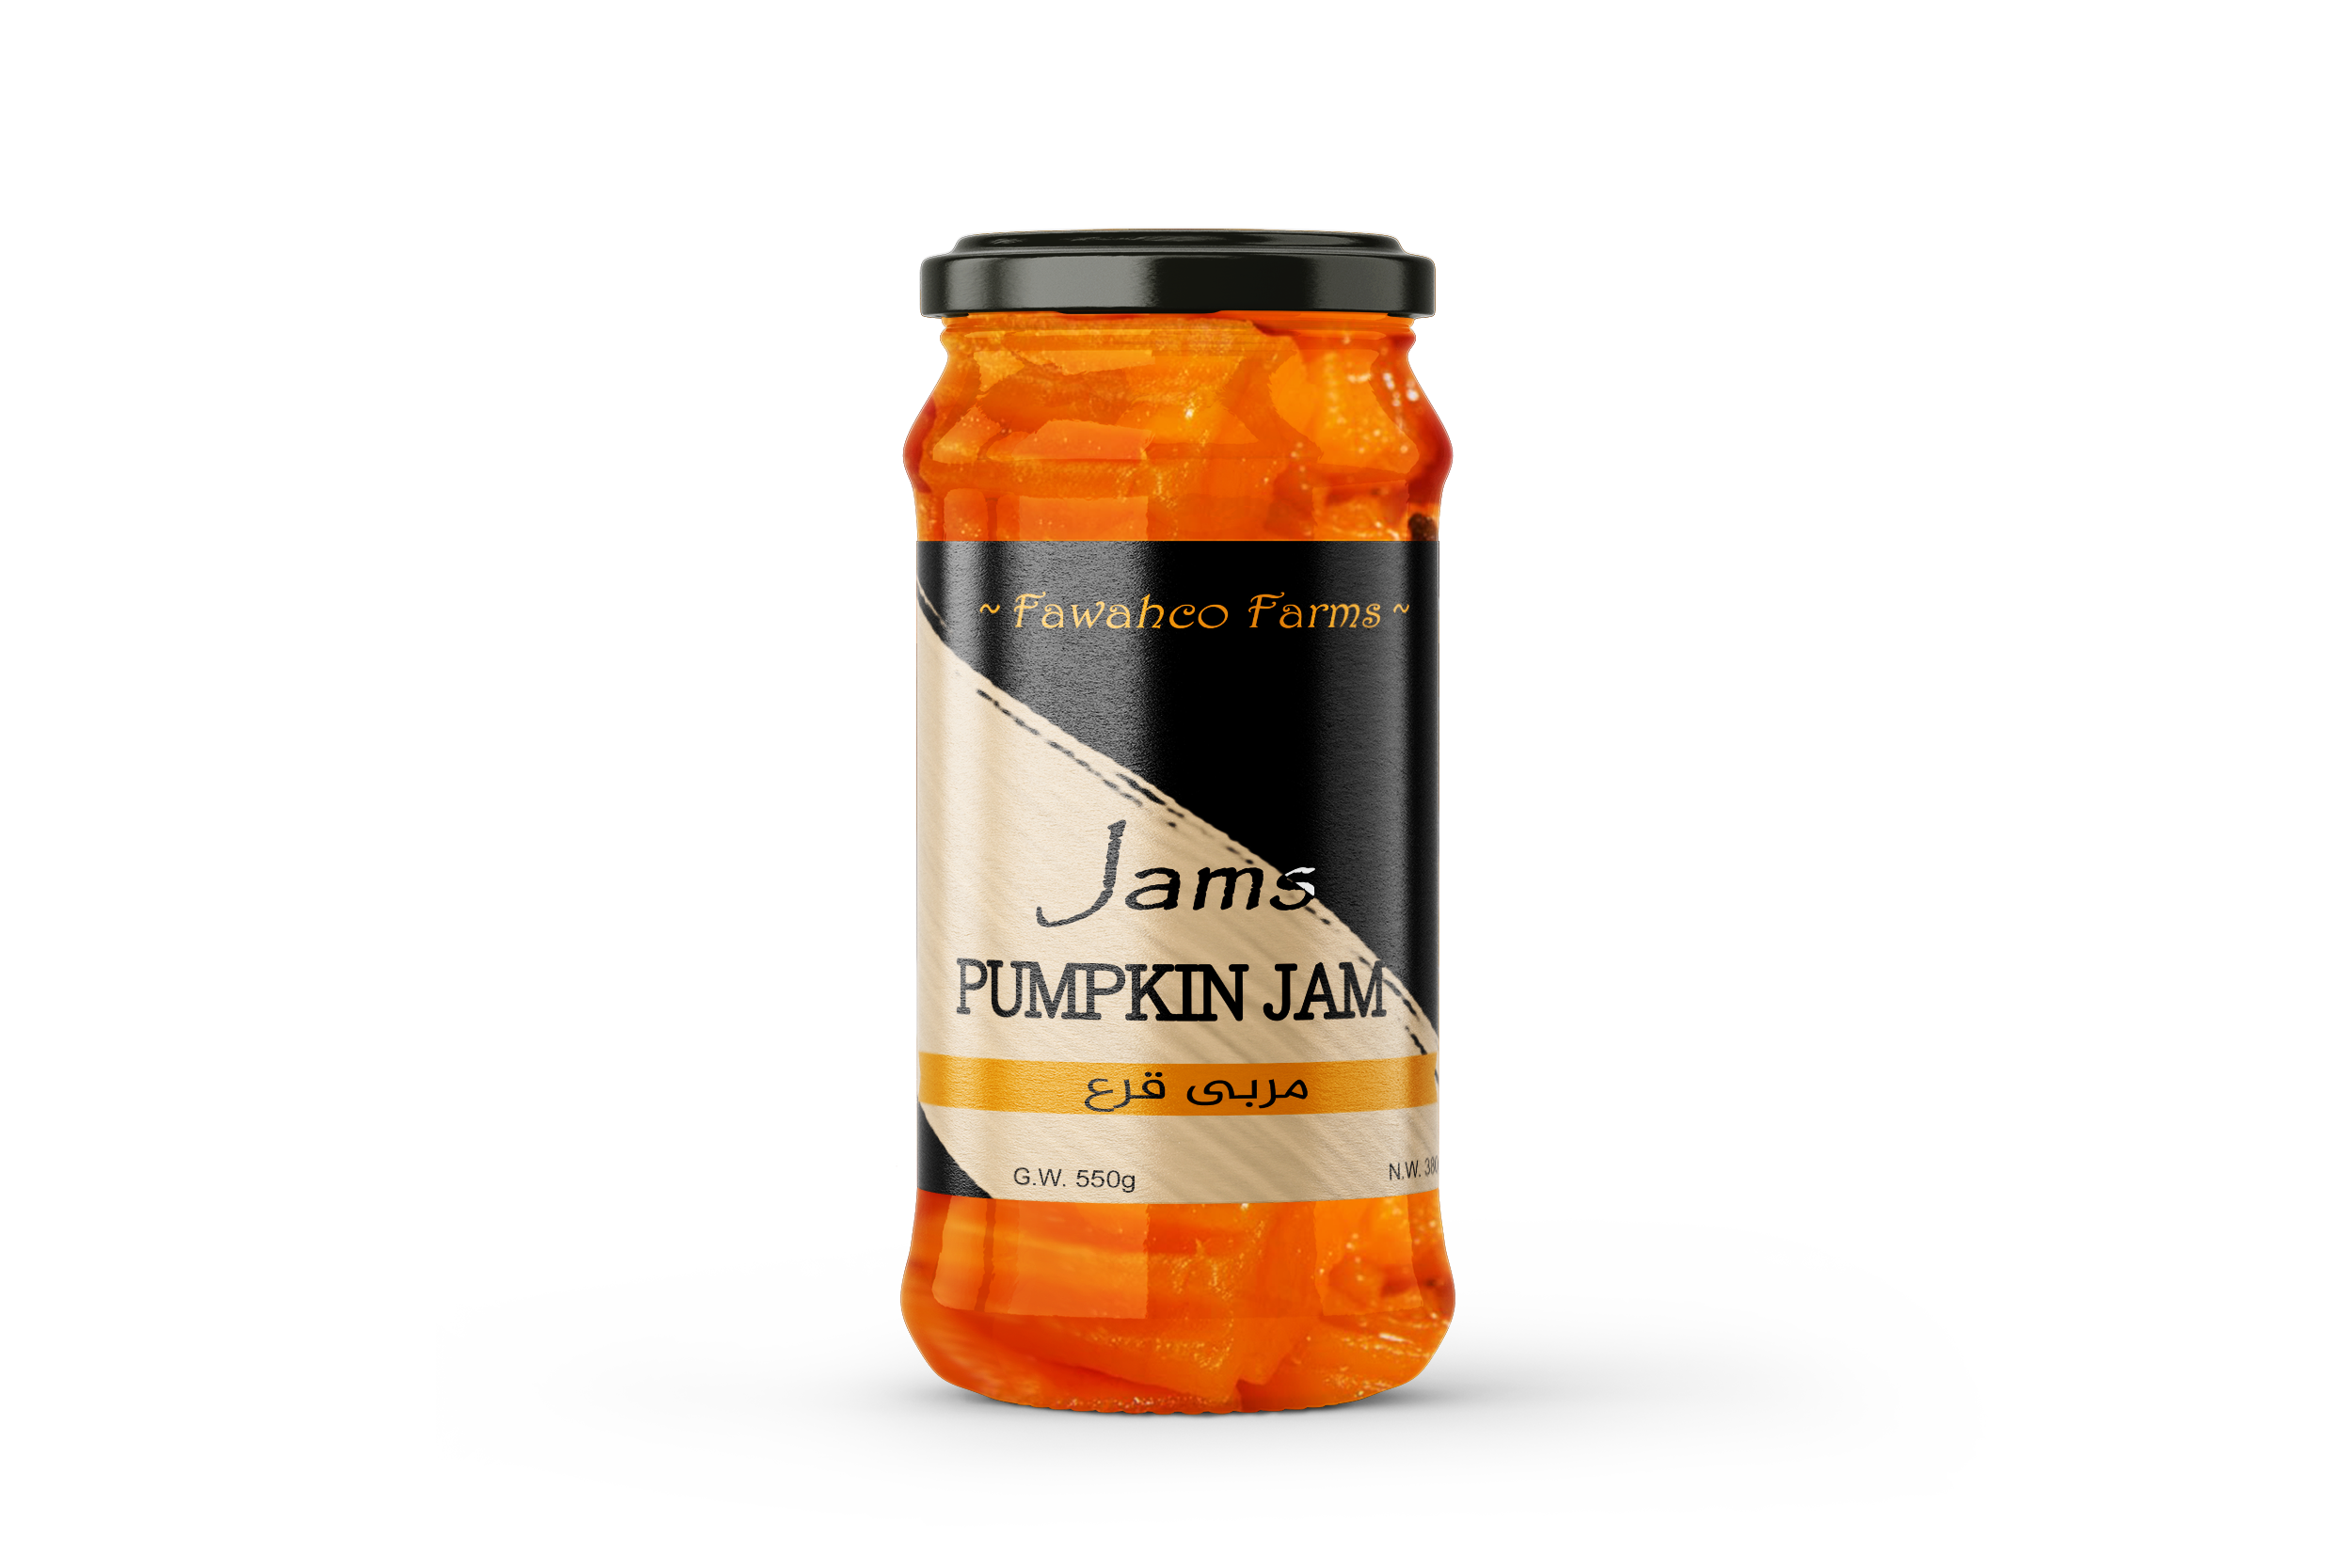 Pumpkin Jam